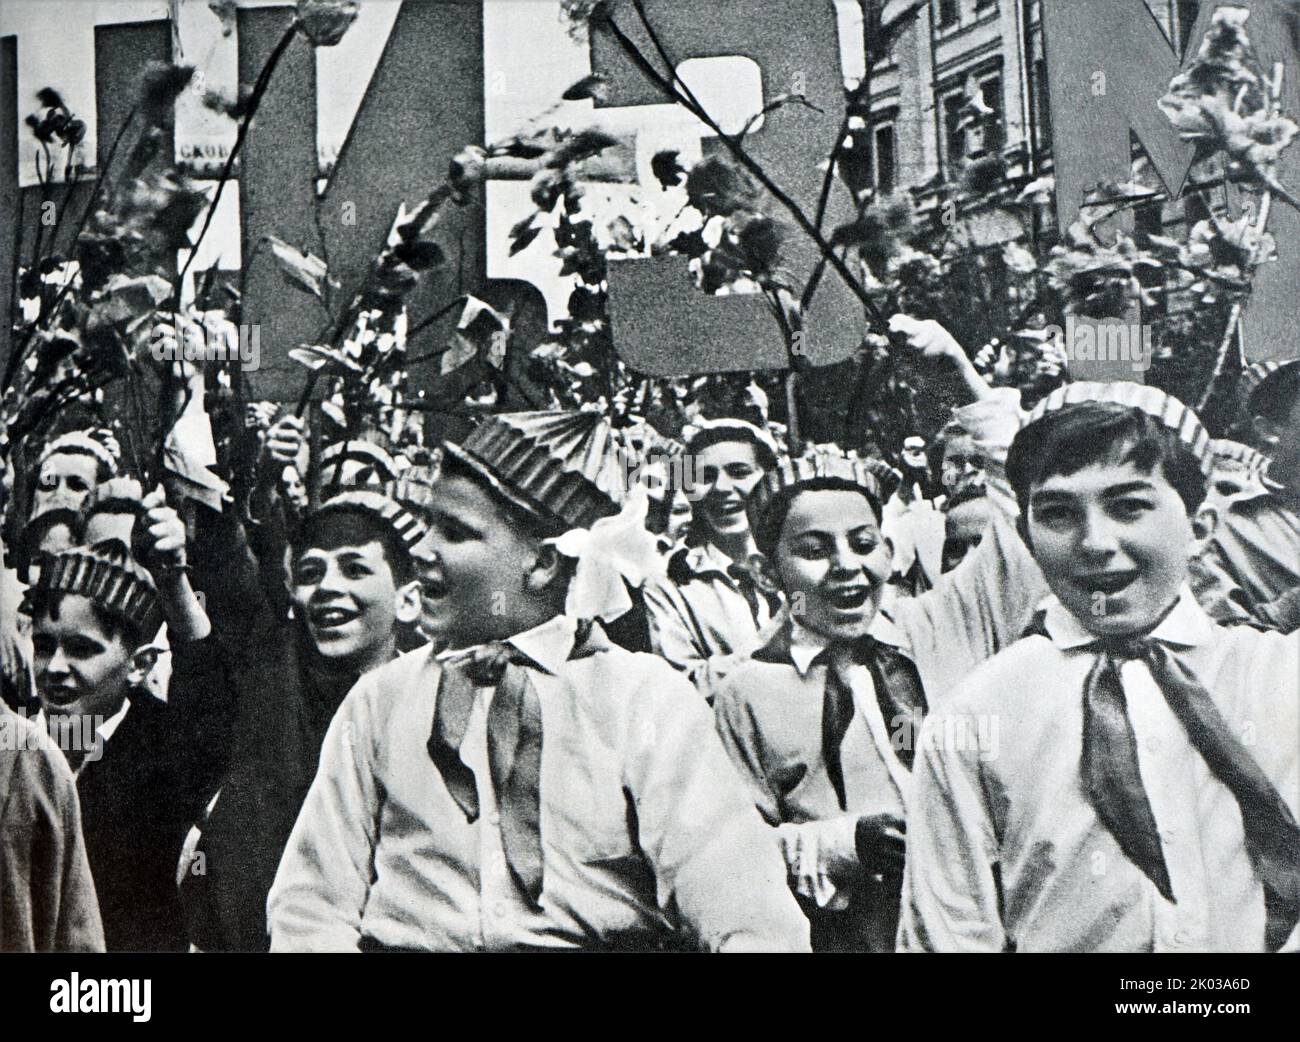 Propagandafoto von sowjetischen russischen Kindern bei einer öffentlichen Parade. 1962. Stockfoto